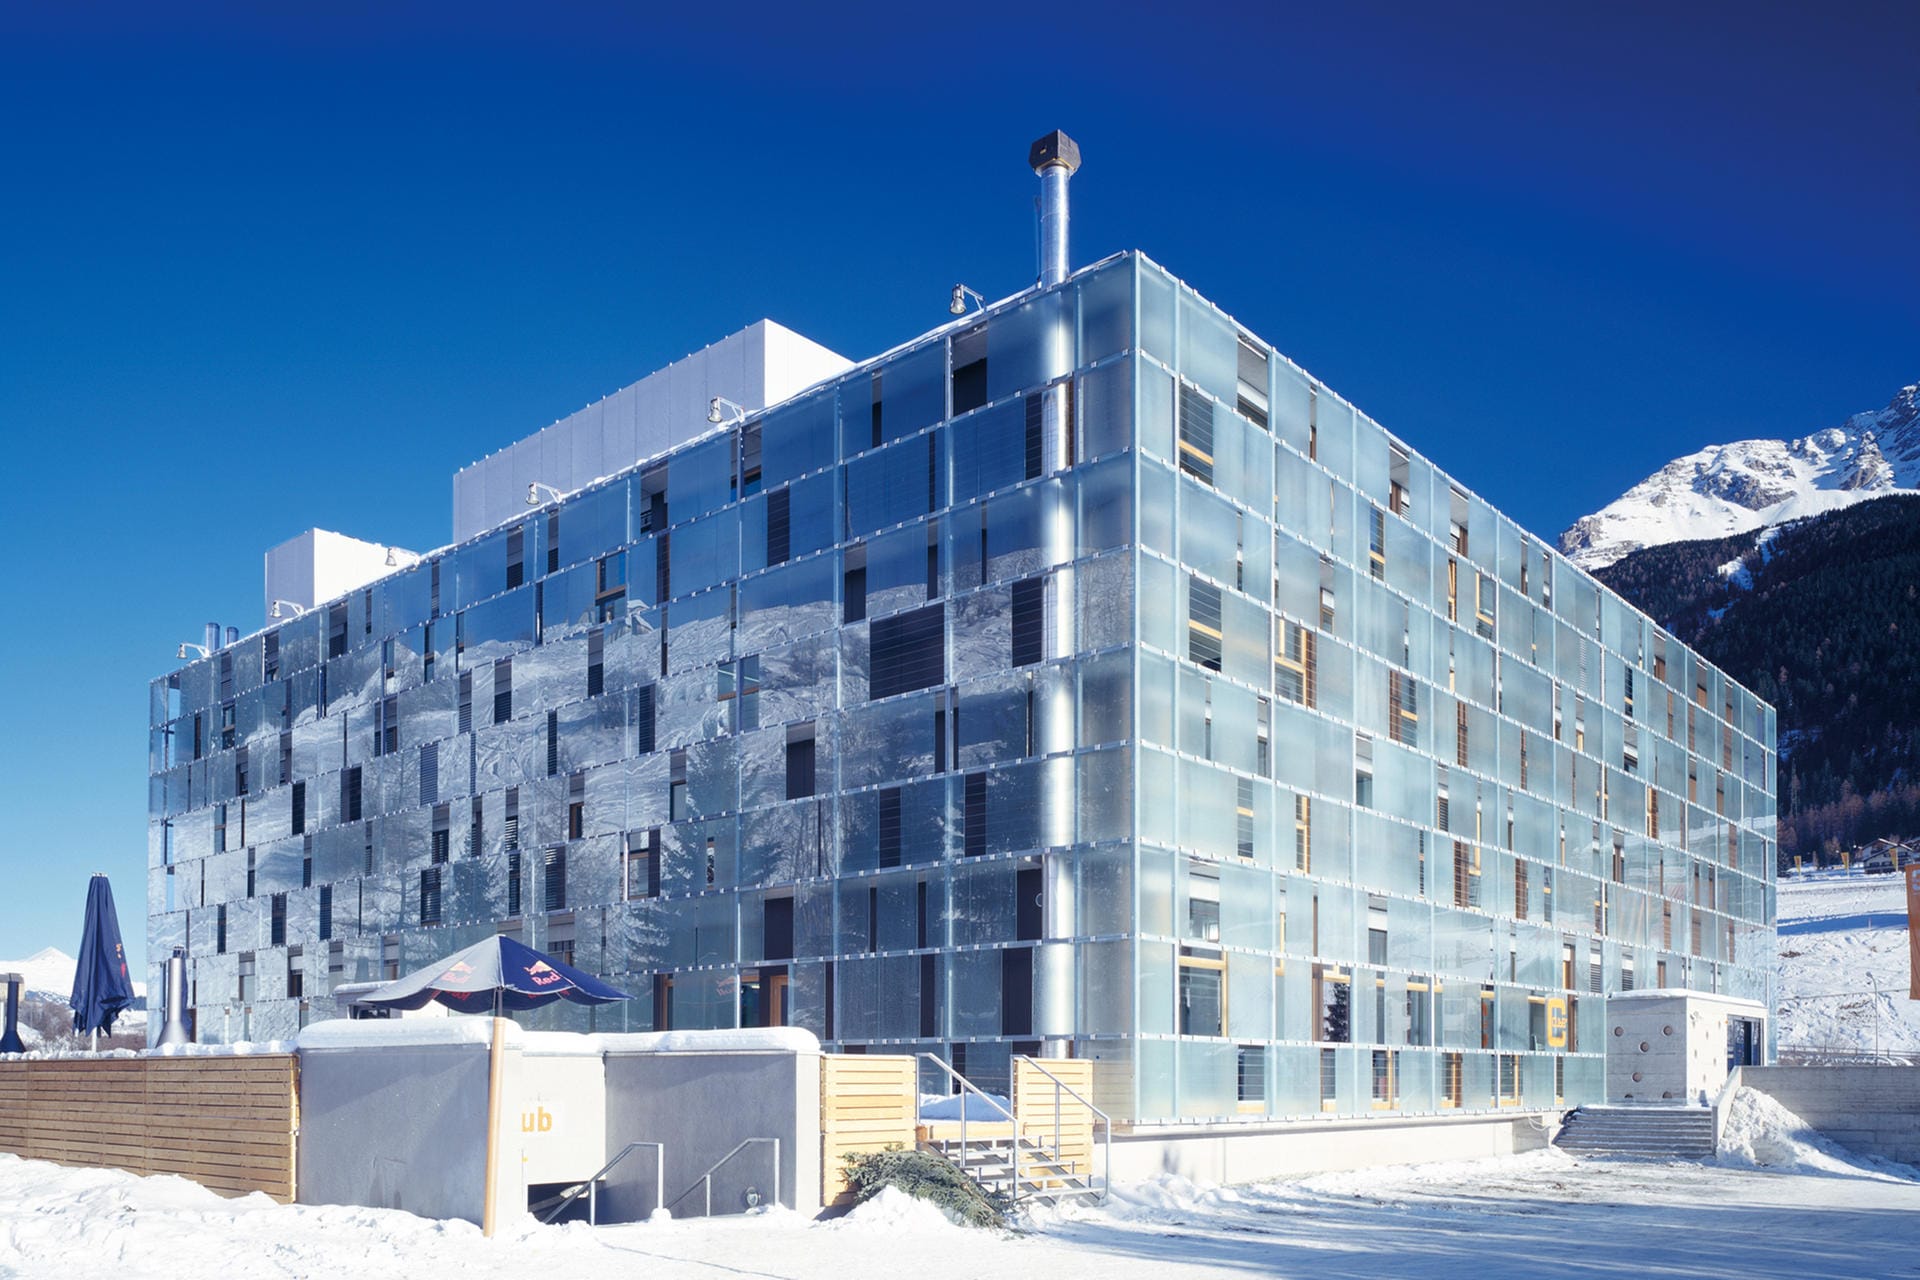 Das moderne Hotel "Cube" liegt nur einen Kilometer vom Skigebiet Savognin entfernt - und ist dennoch erschwinglich.